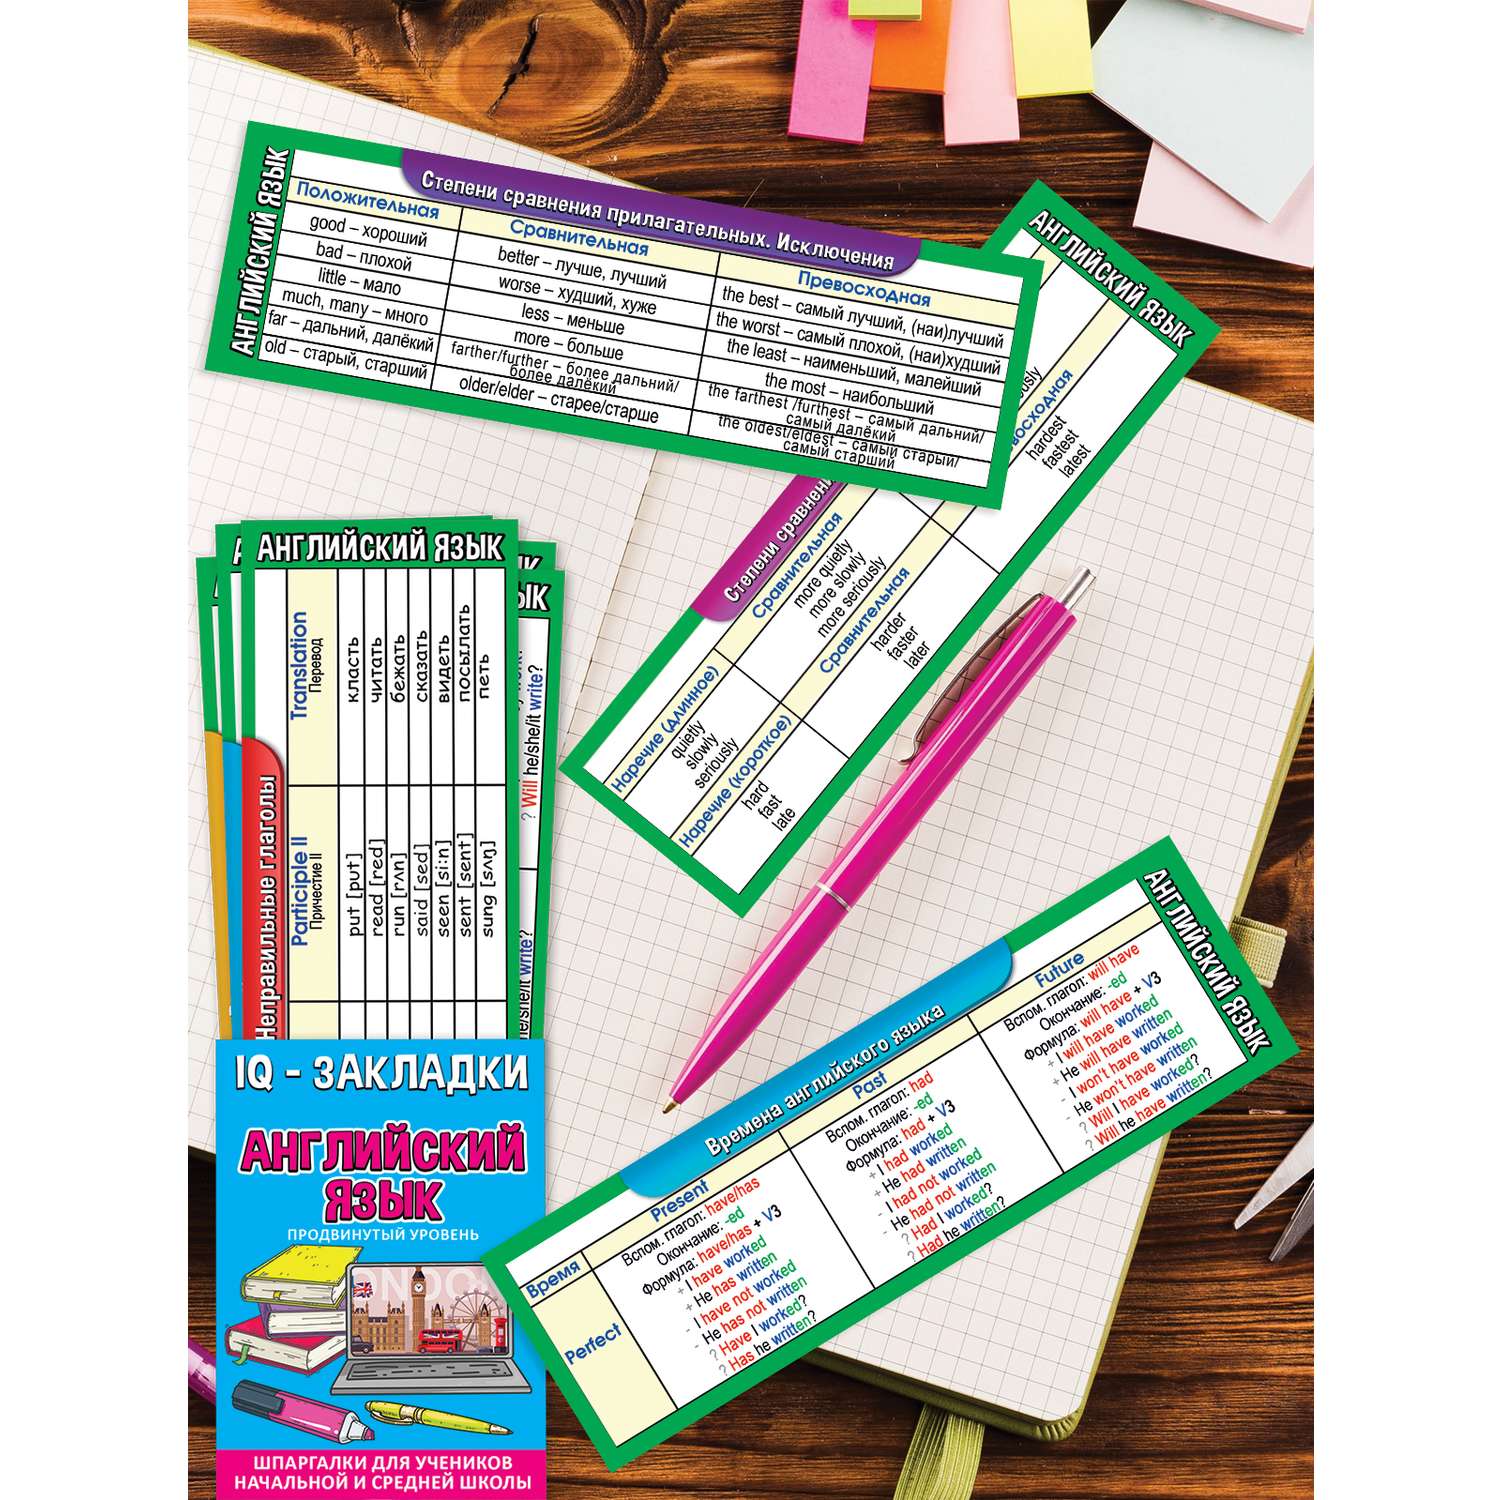 Закладки картонные Праздник по английскому языку для школы шпаргалка 7 шт - фото 3